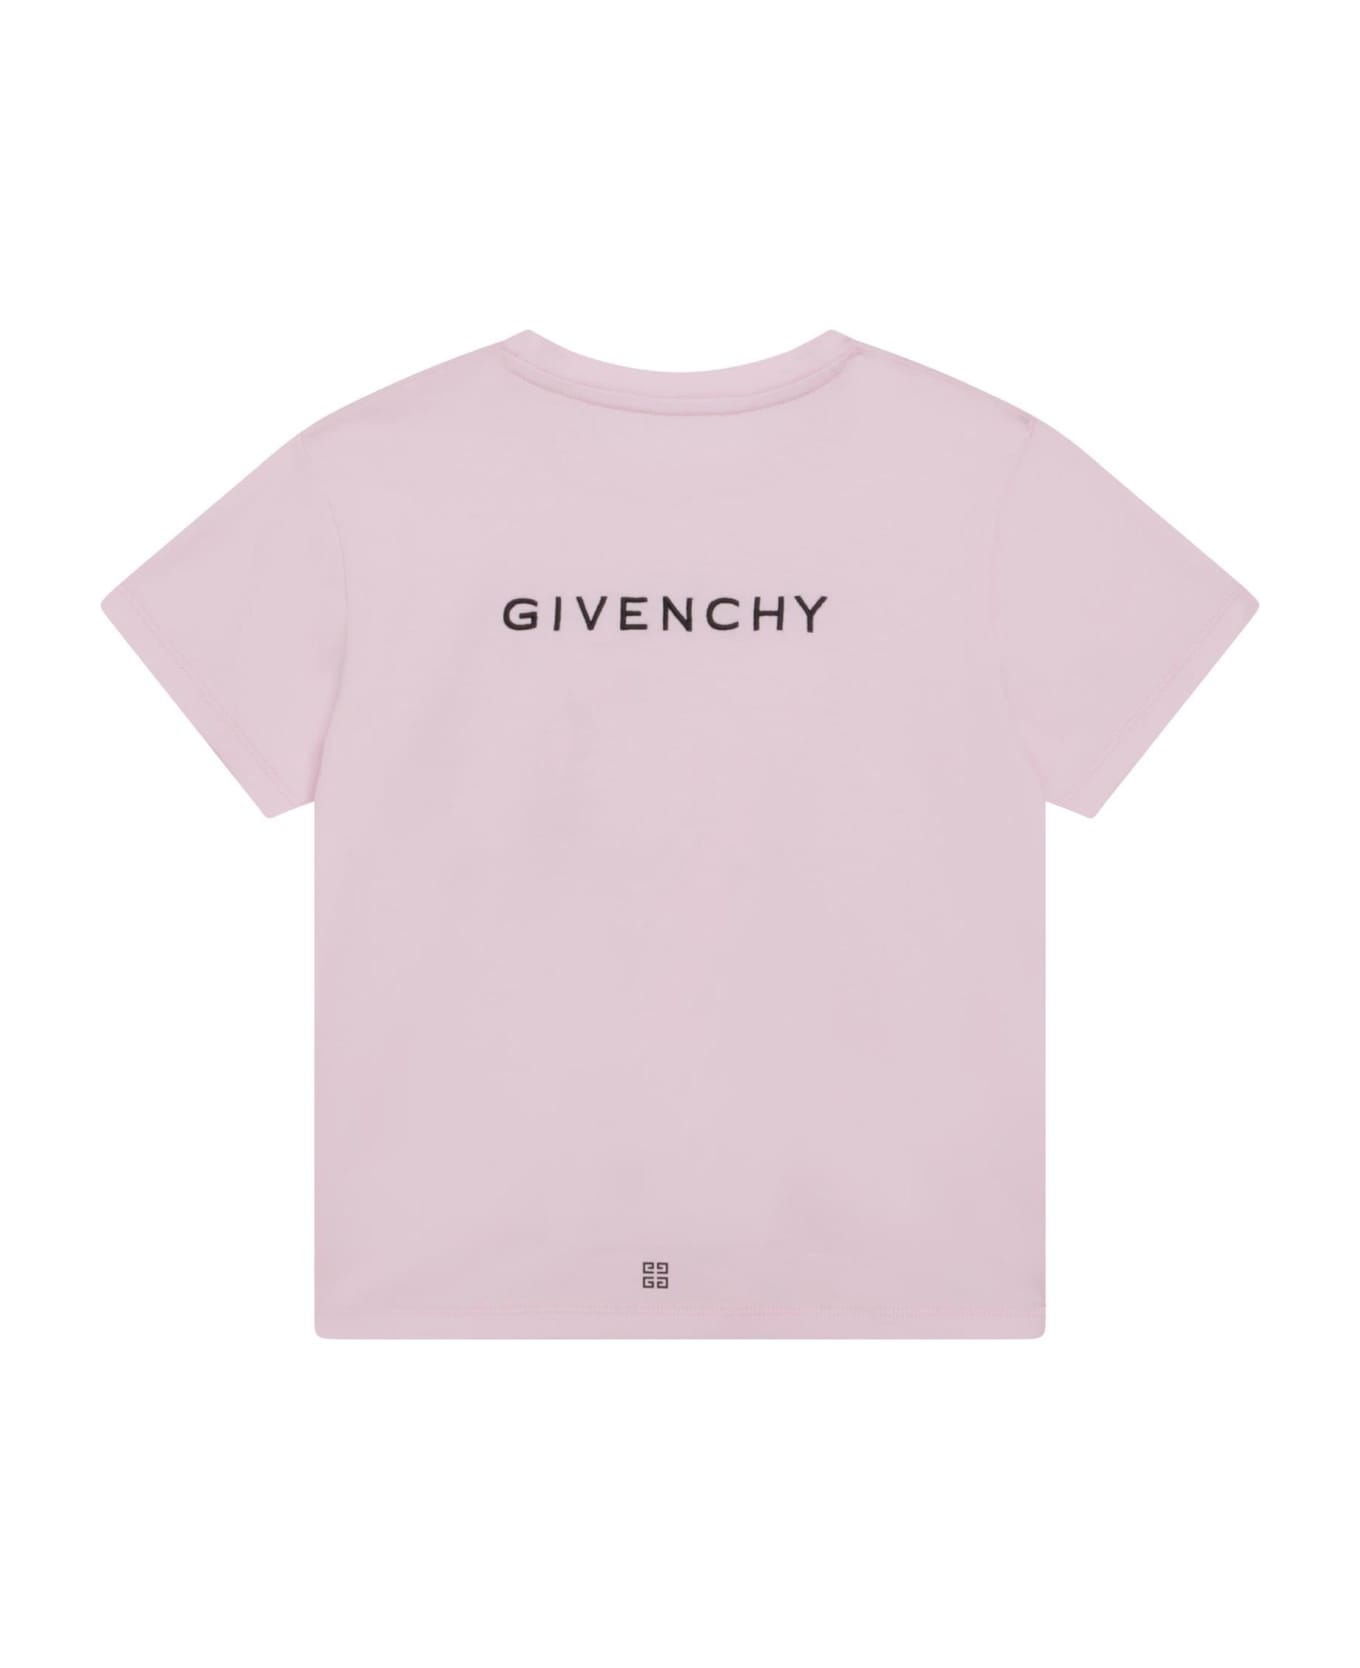 Givenchy Printed T-shirt - Pink